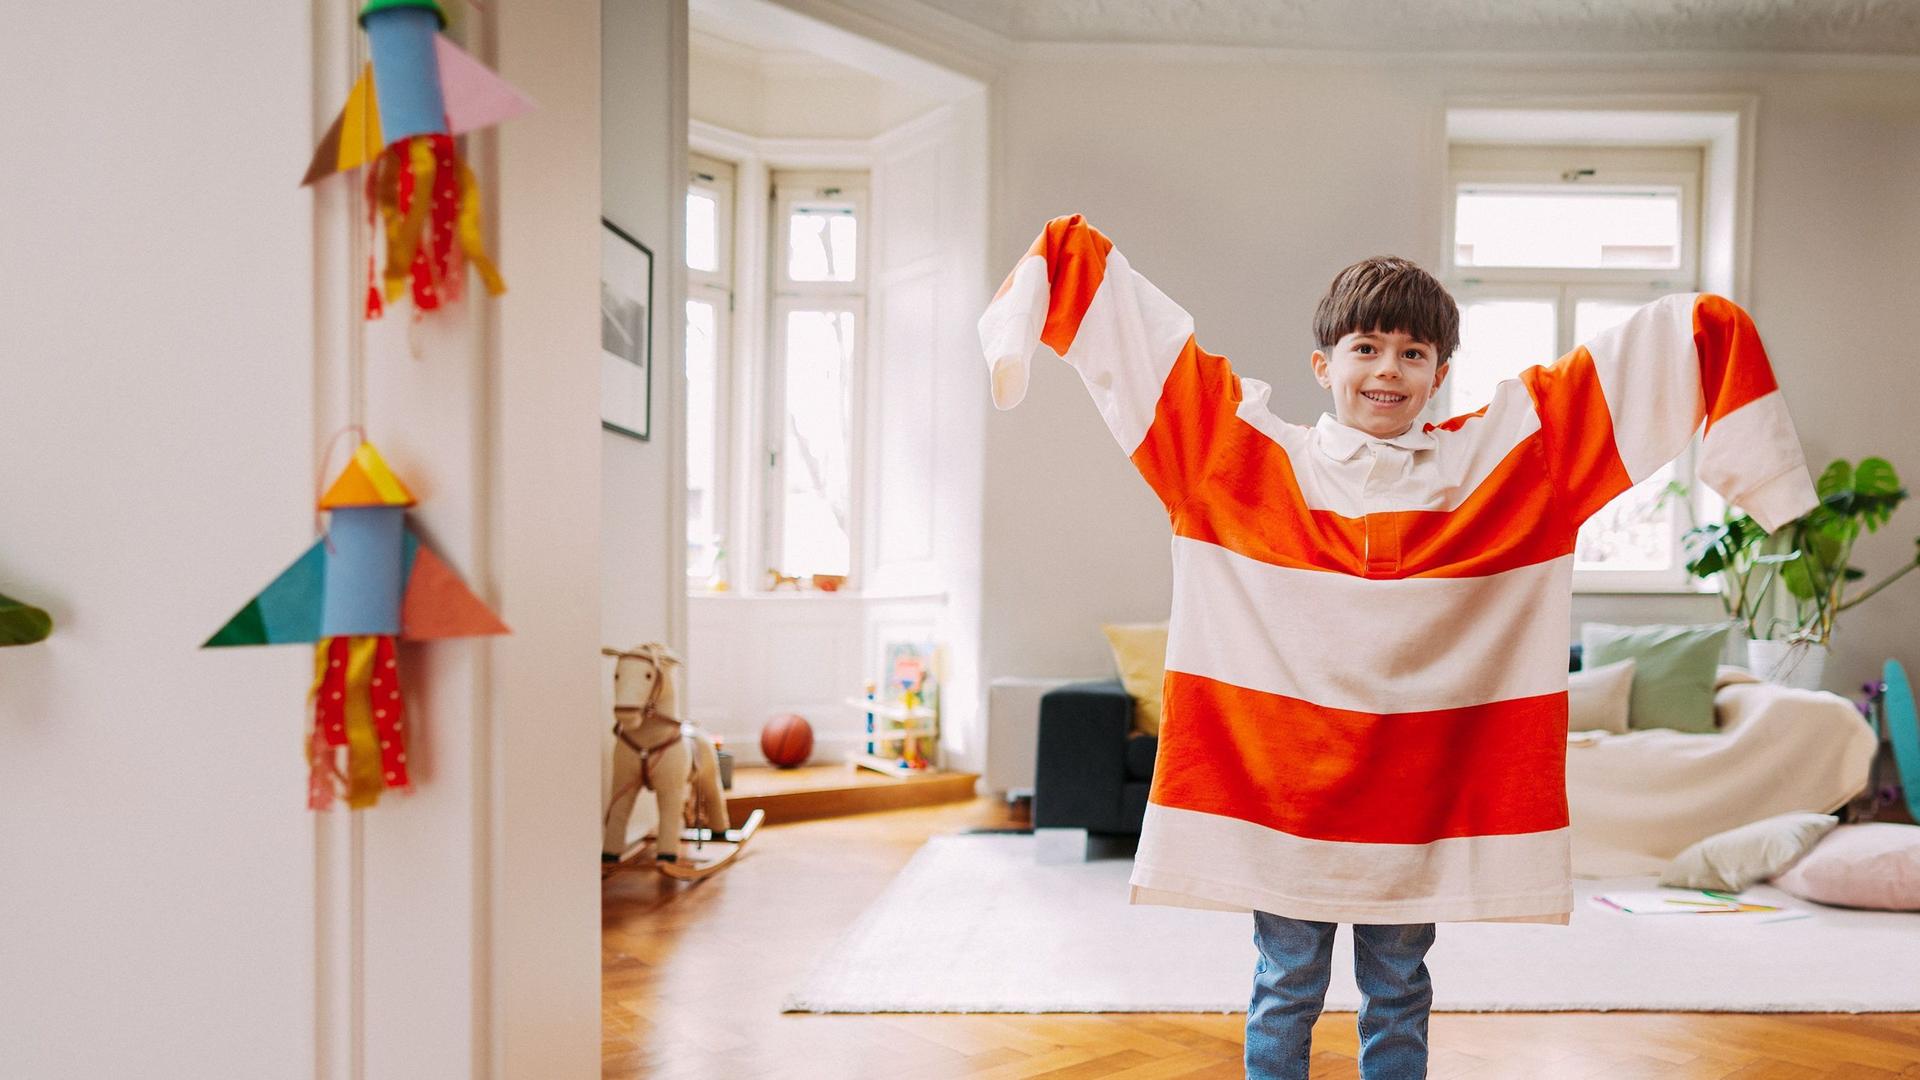 Kleiner Junge steht im mit einem zu großen rot-weiß-gestreiften Pulli im Wohnzimmer und hebt die Arme nach oben